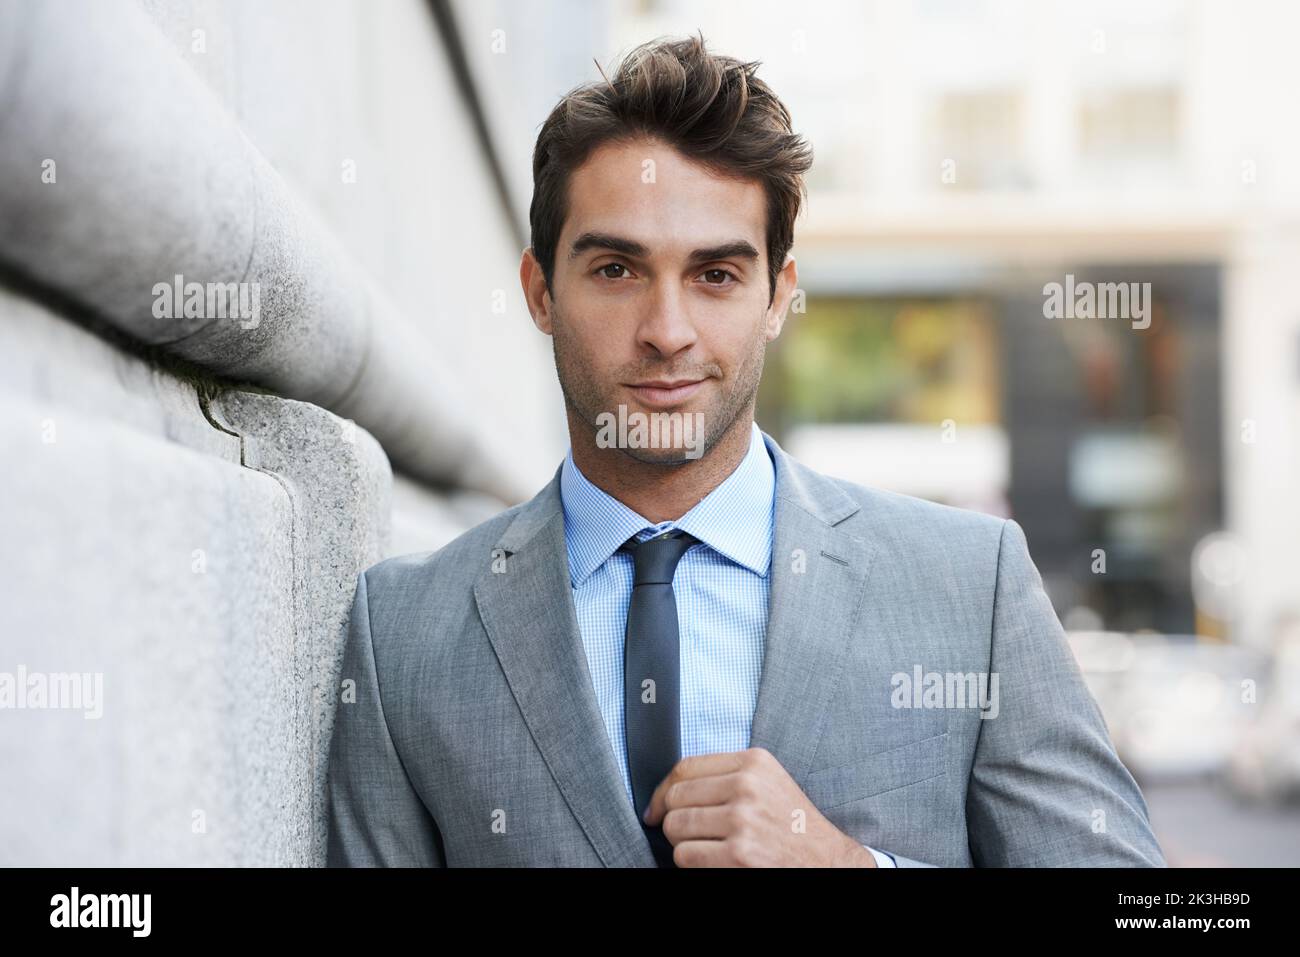 Lavorare in città. Un bel giovane uomo d'affari che guarda la fotocamera. Foto Stock